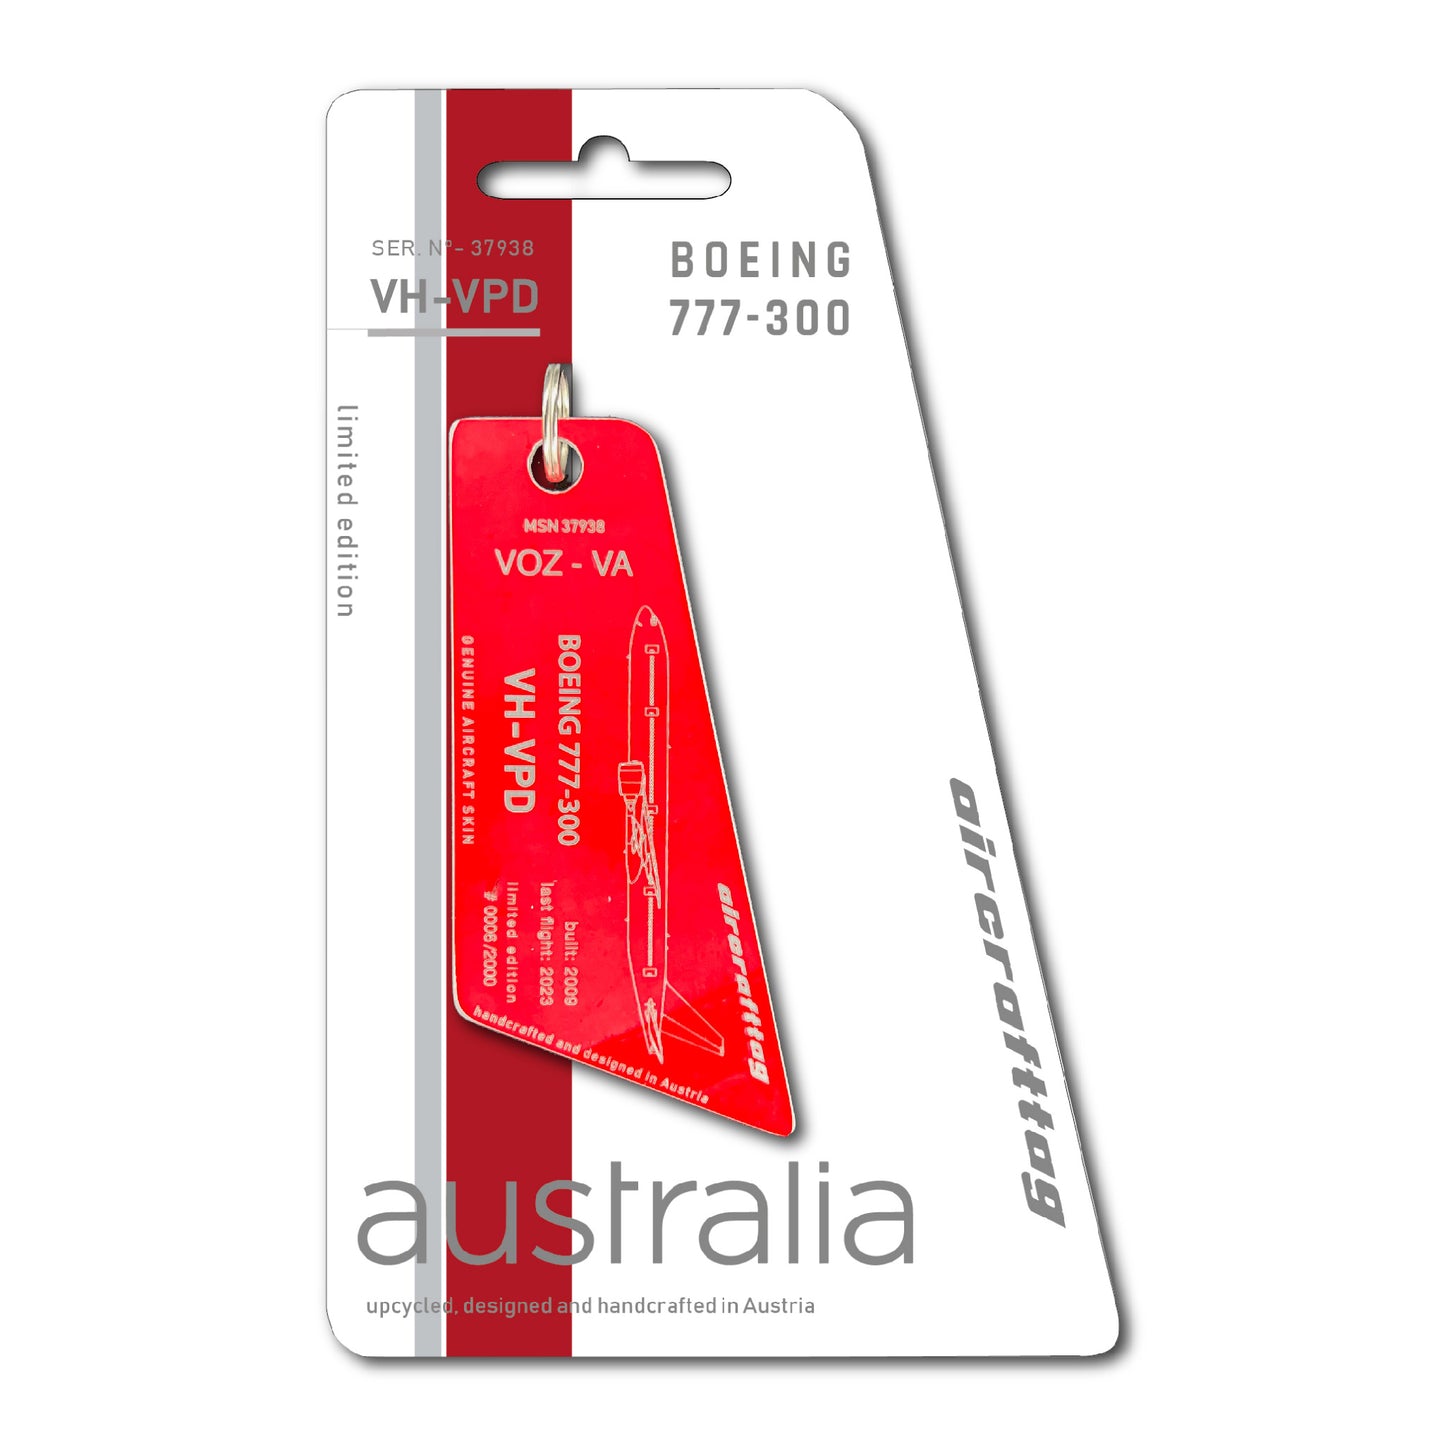 Boeing B777-300 -  Virgin Australia - VH-VPD